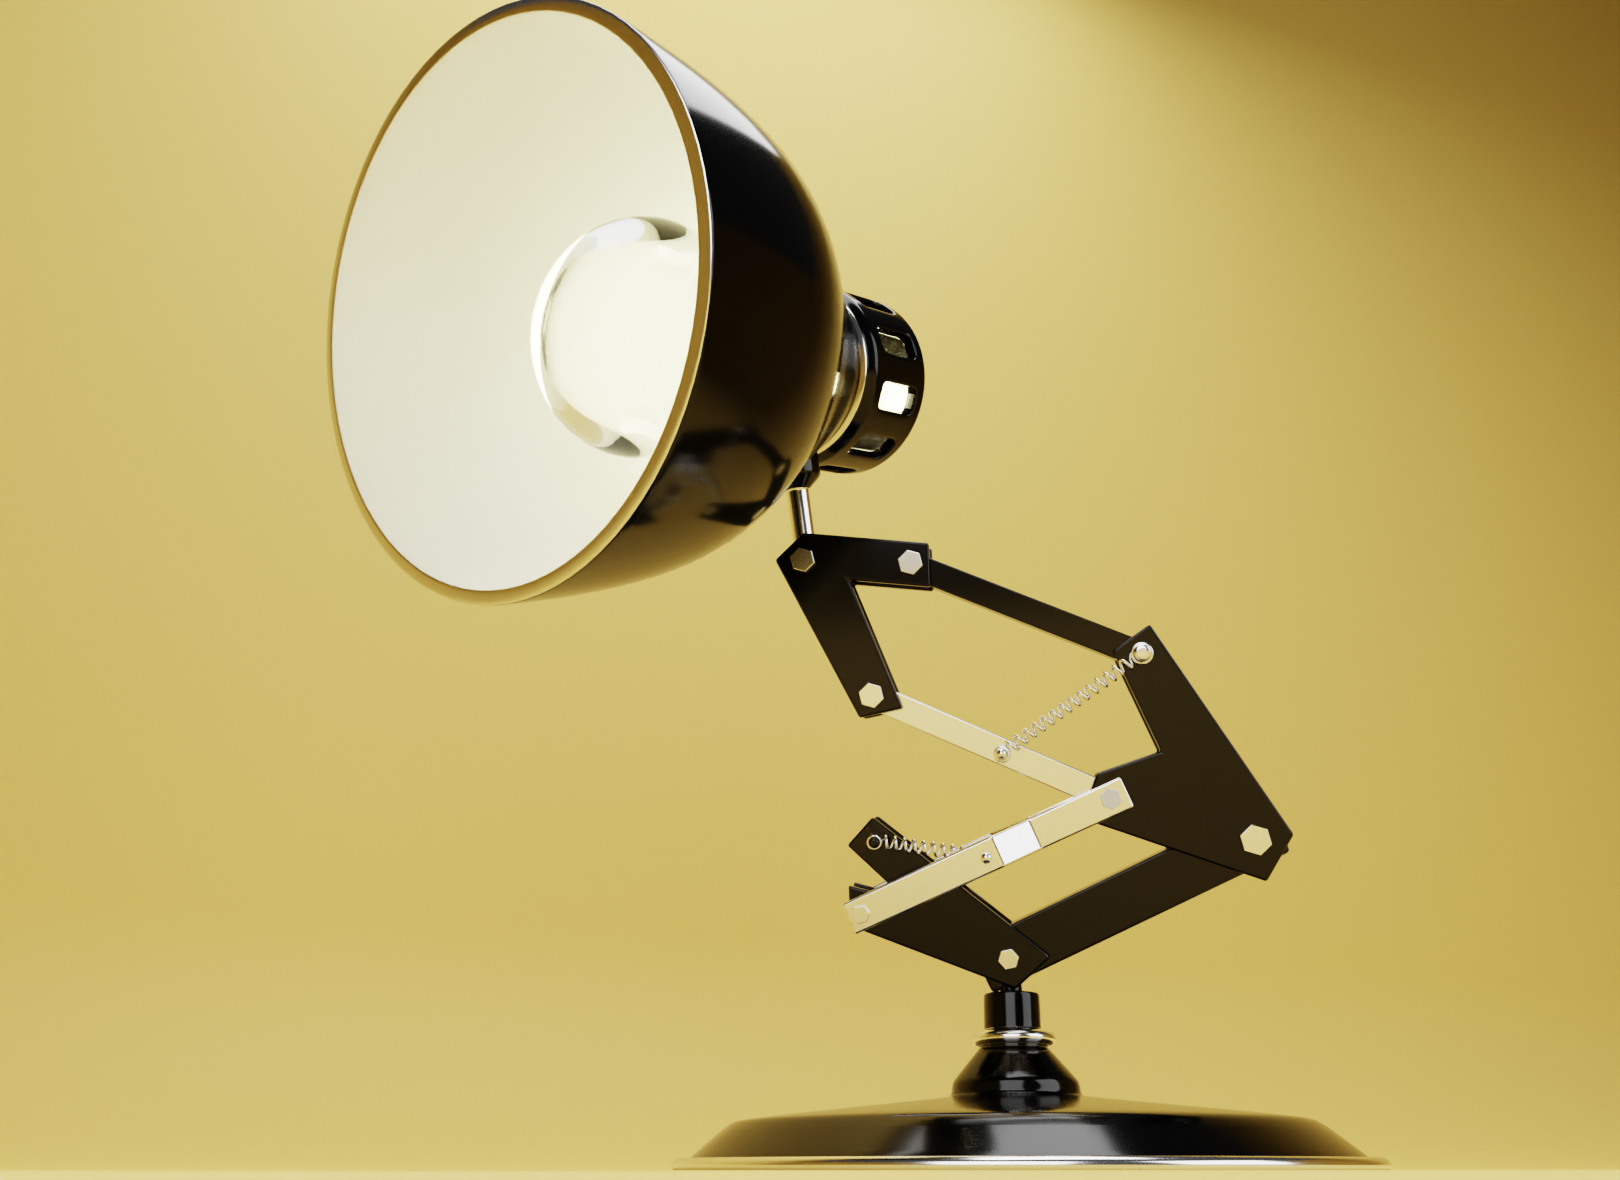 Pixar Lamp Low-poly 3D model